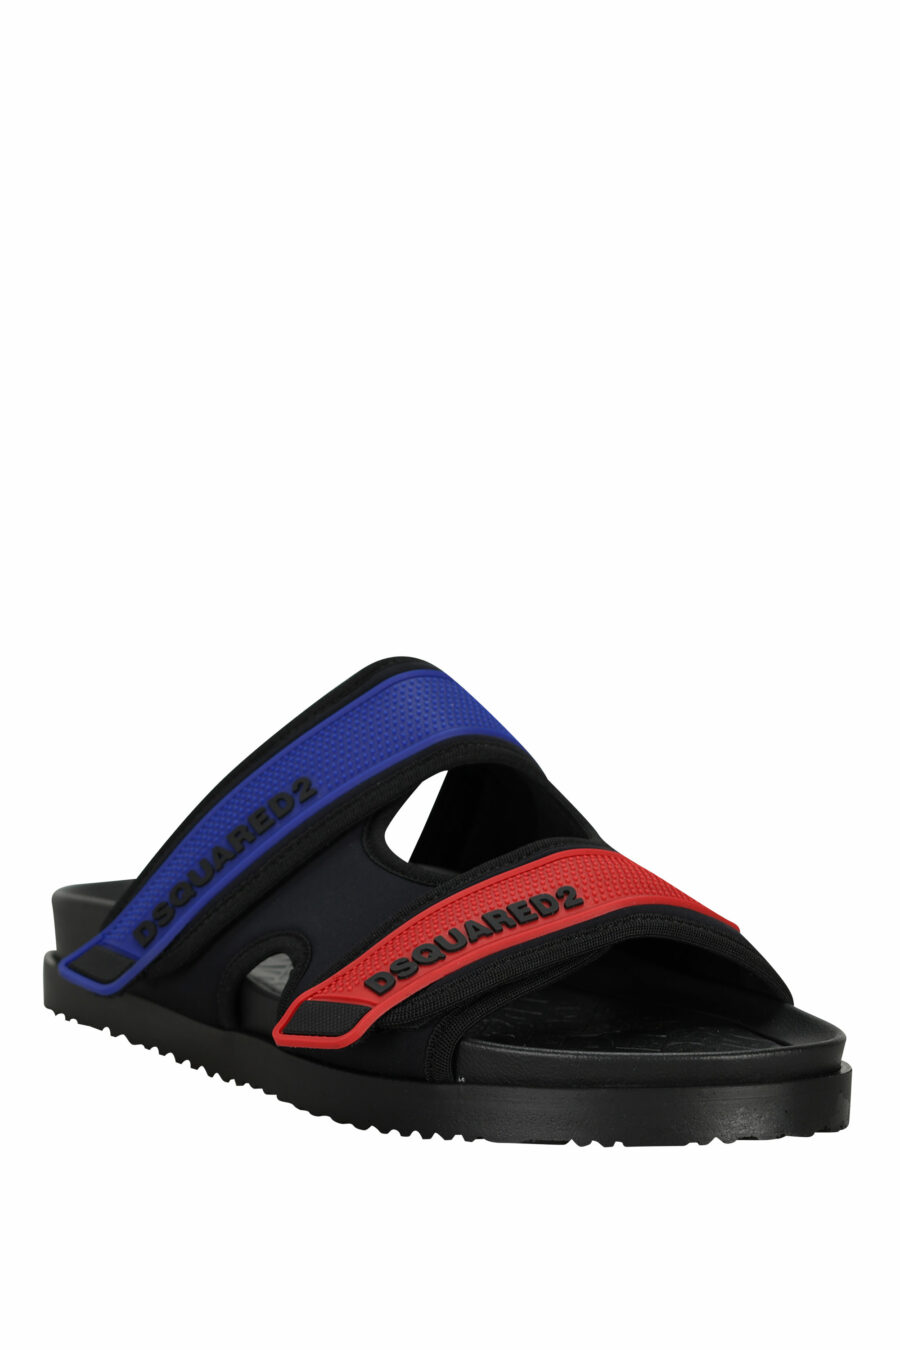 Sandalias negras con rojo y azul de velcro - 805777314715 1